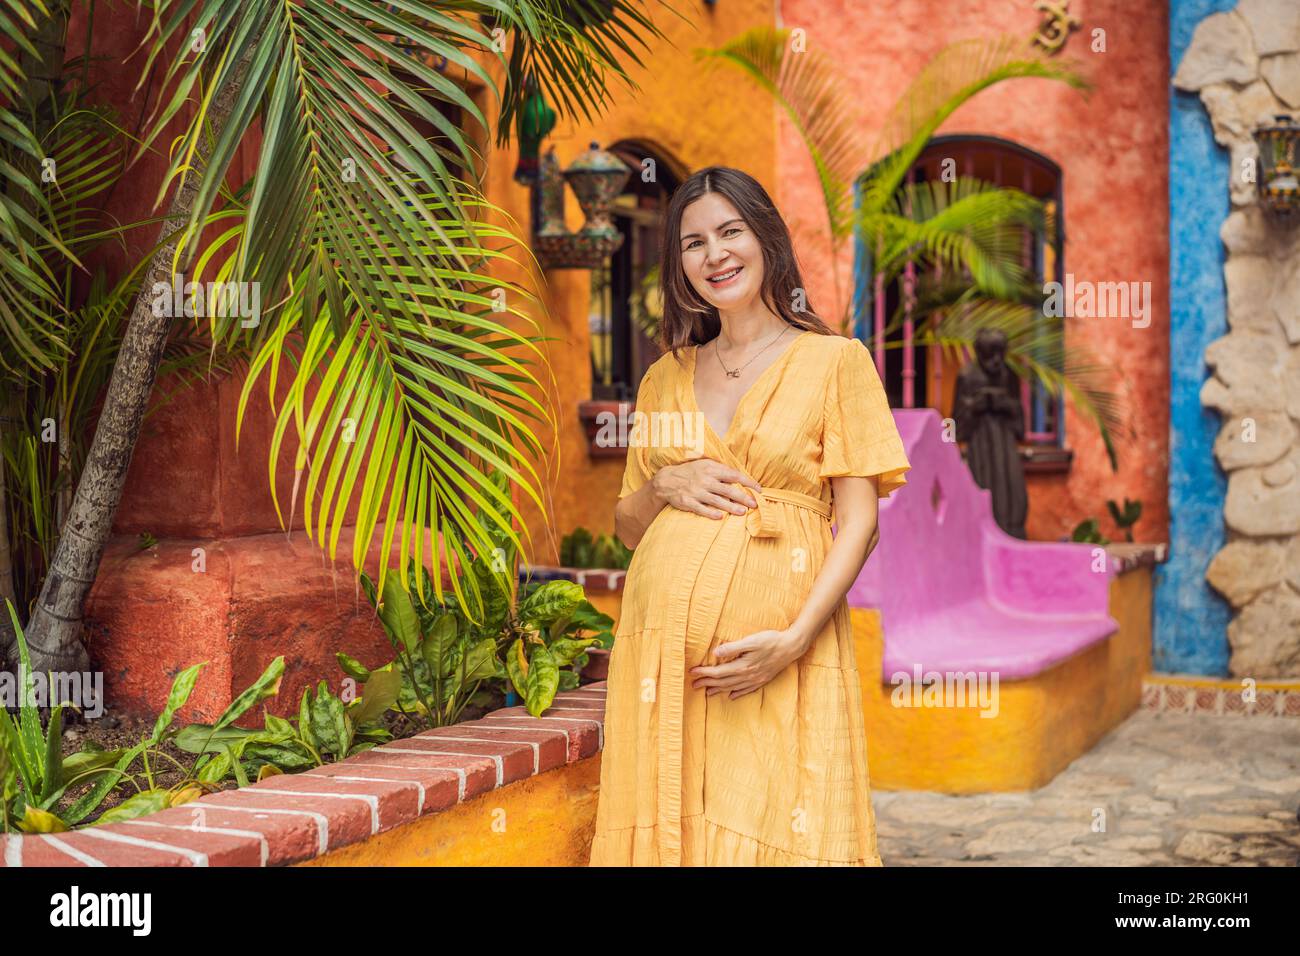 Una donna forte e resiliente di oltre 40 anni abbraccia la bellezza del parto in Messico, celebrando il viaggio della maternità con ricchezza culturale Foto Stock